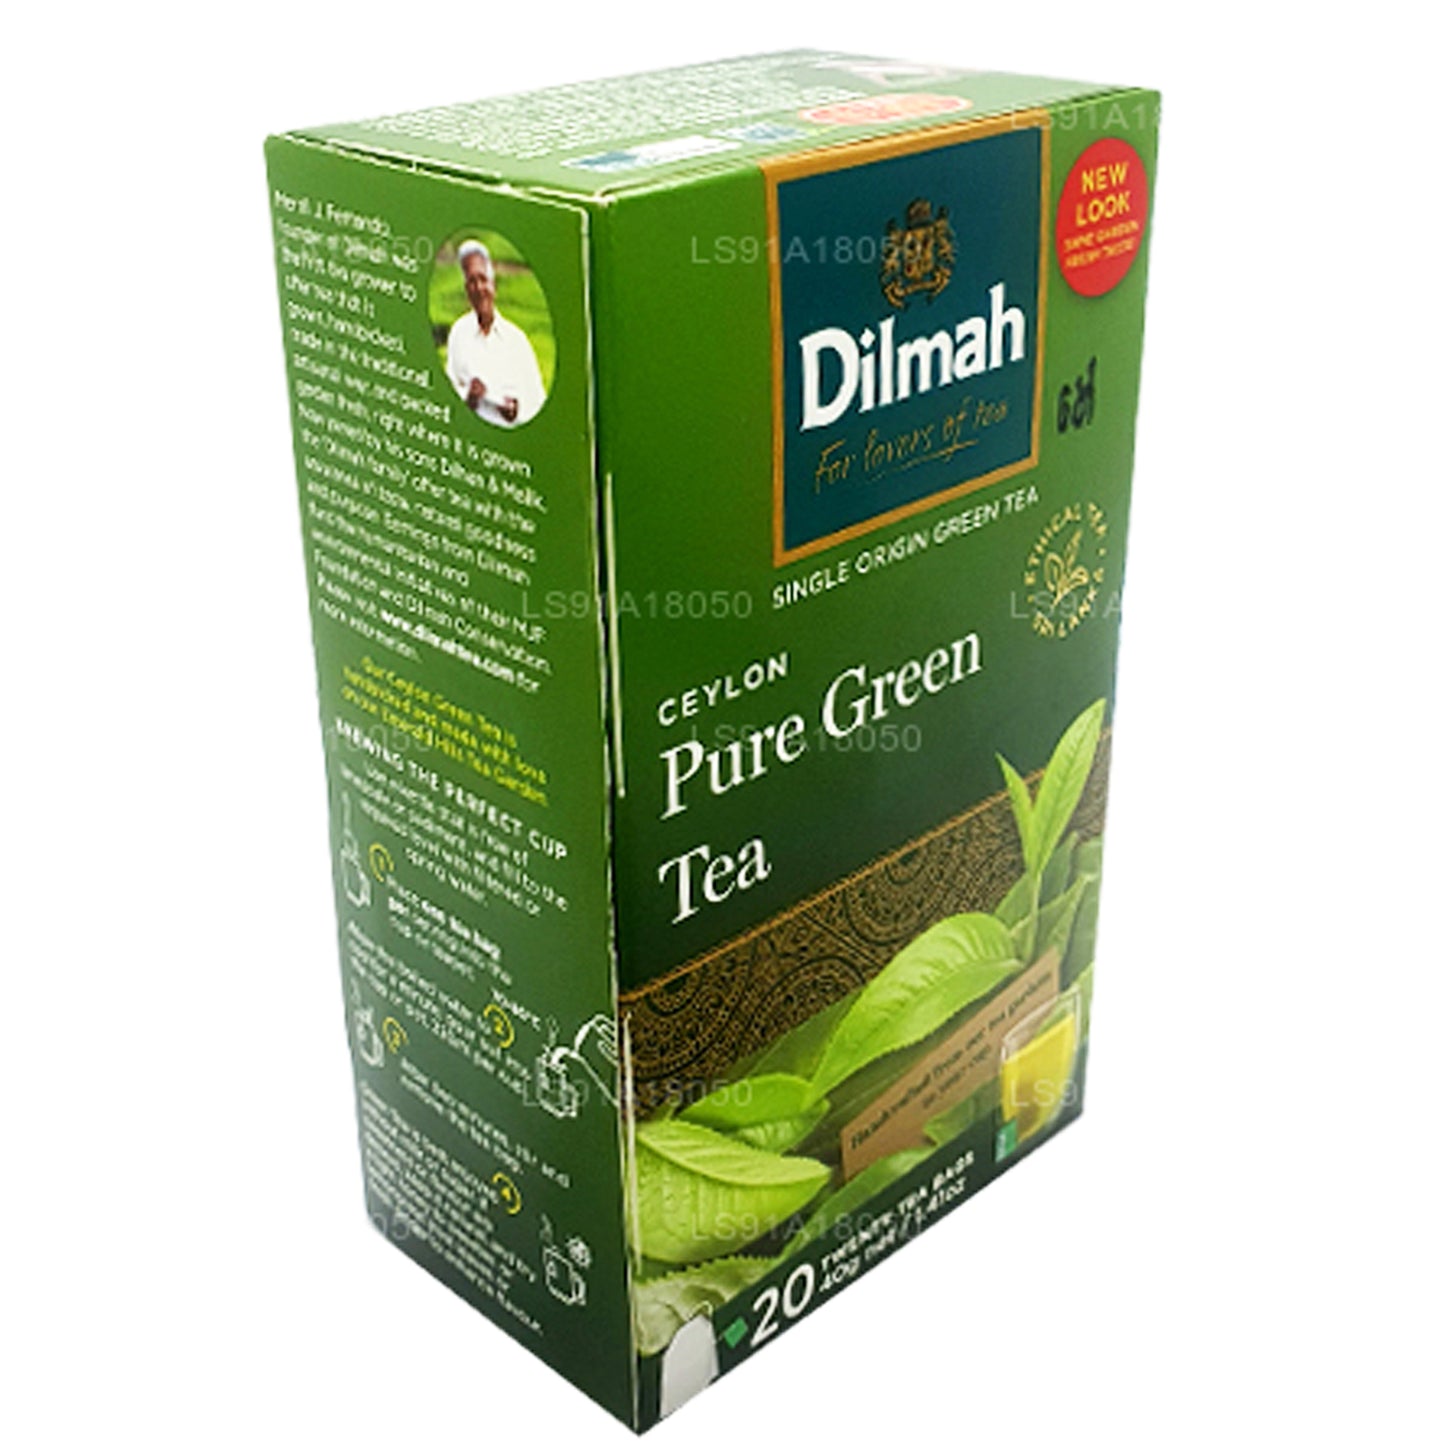 Чистый цейлонский зеленый чай Dilmah (40 г) 20 пакетиков